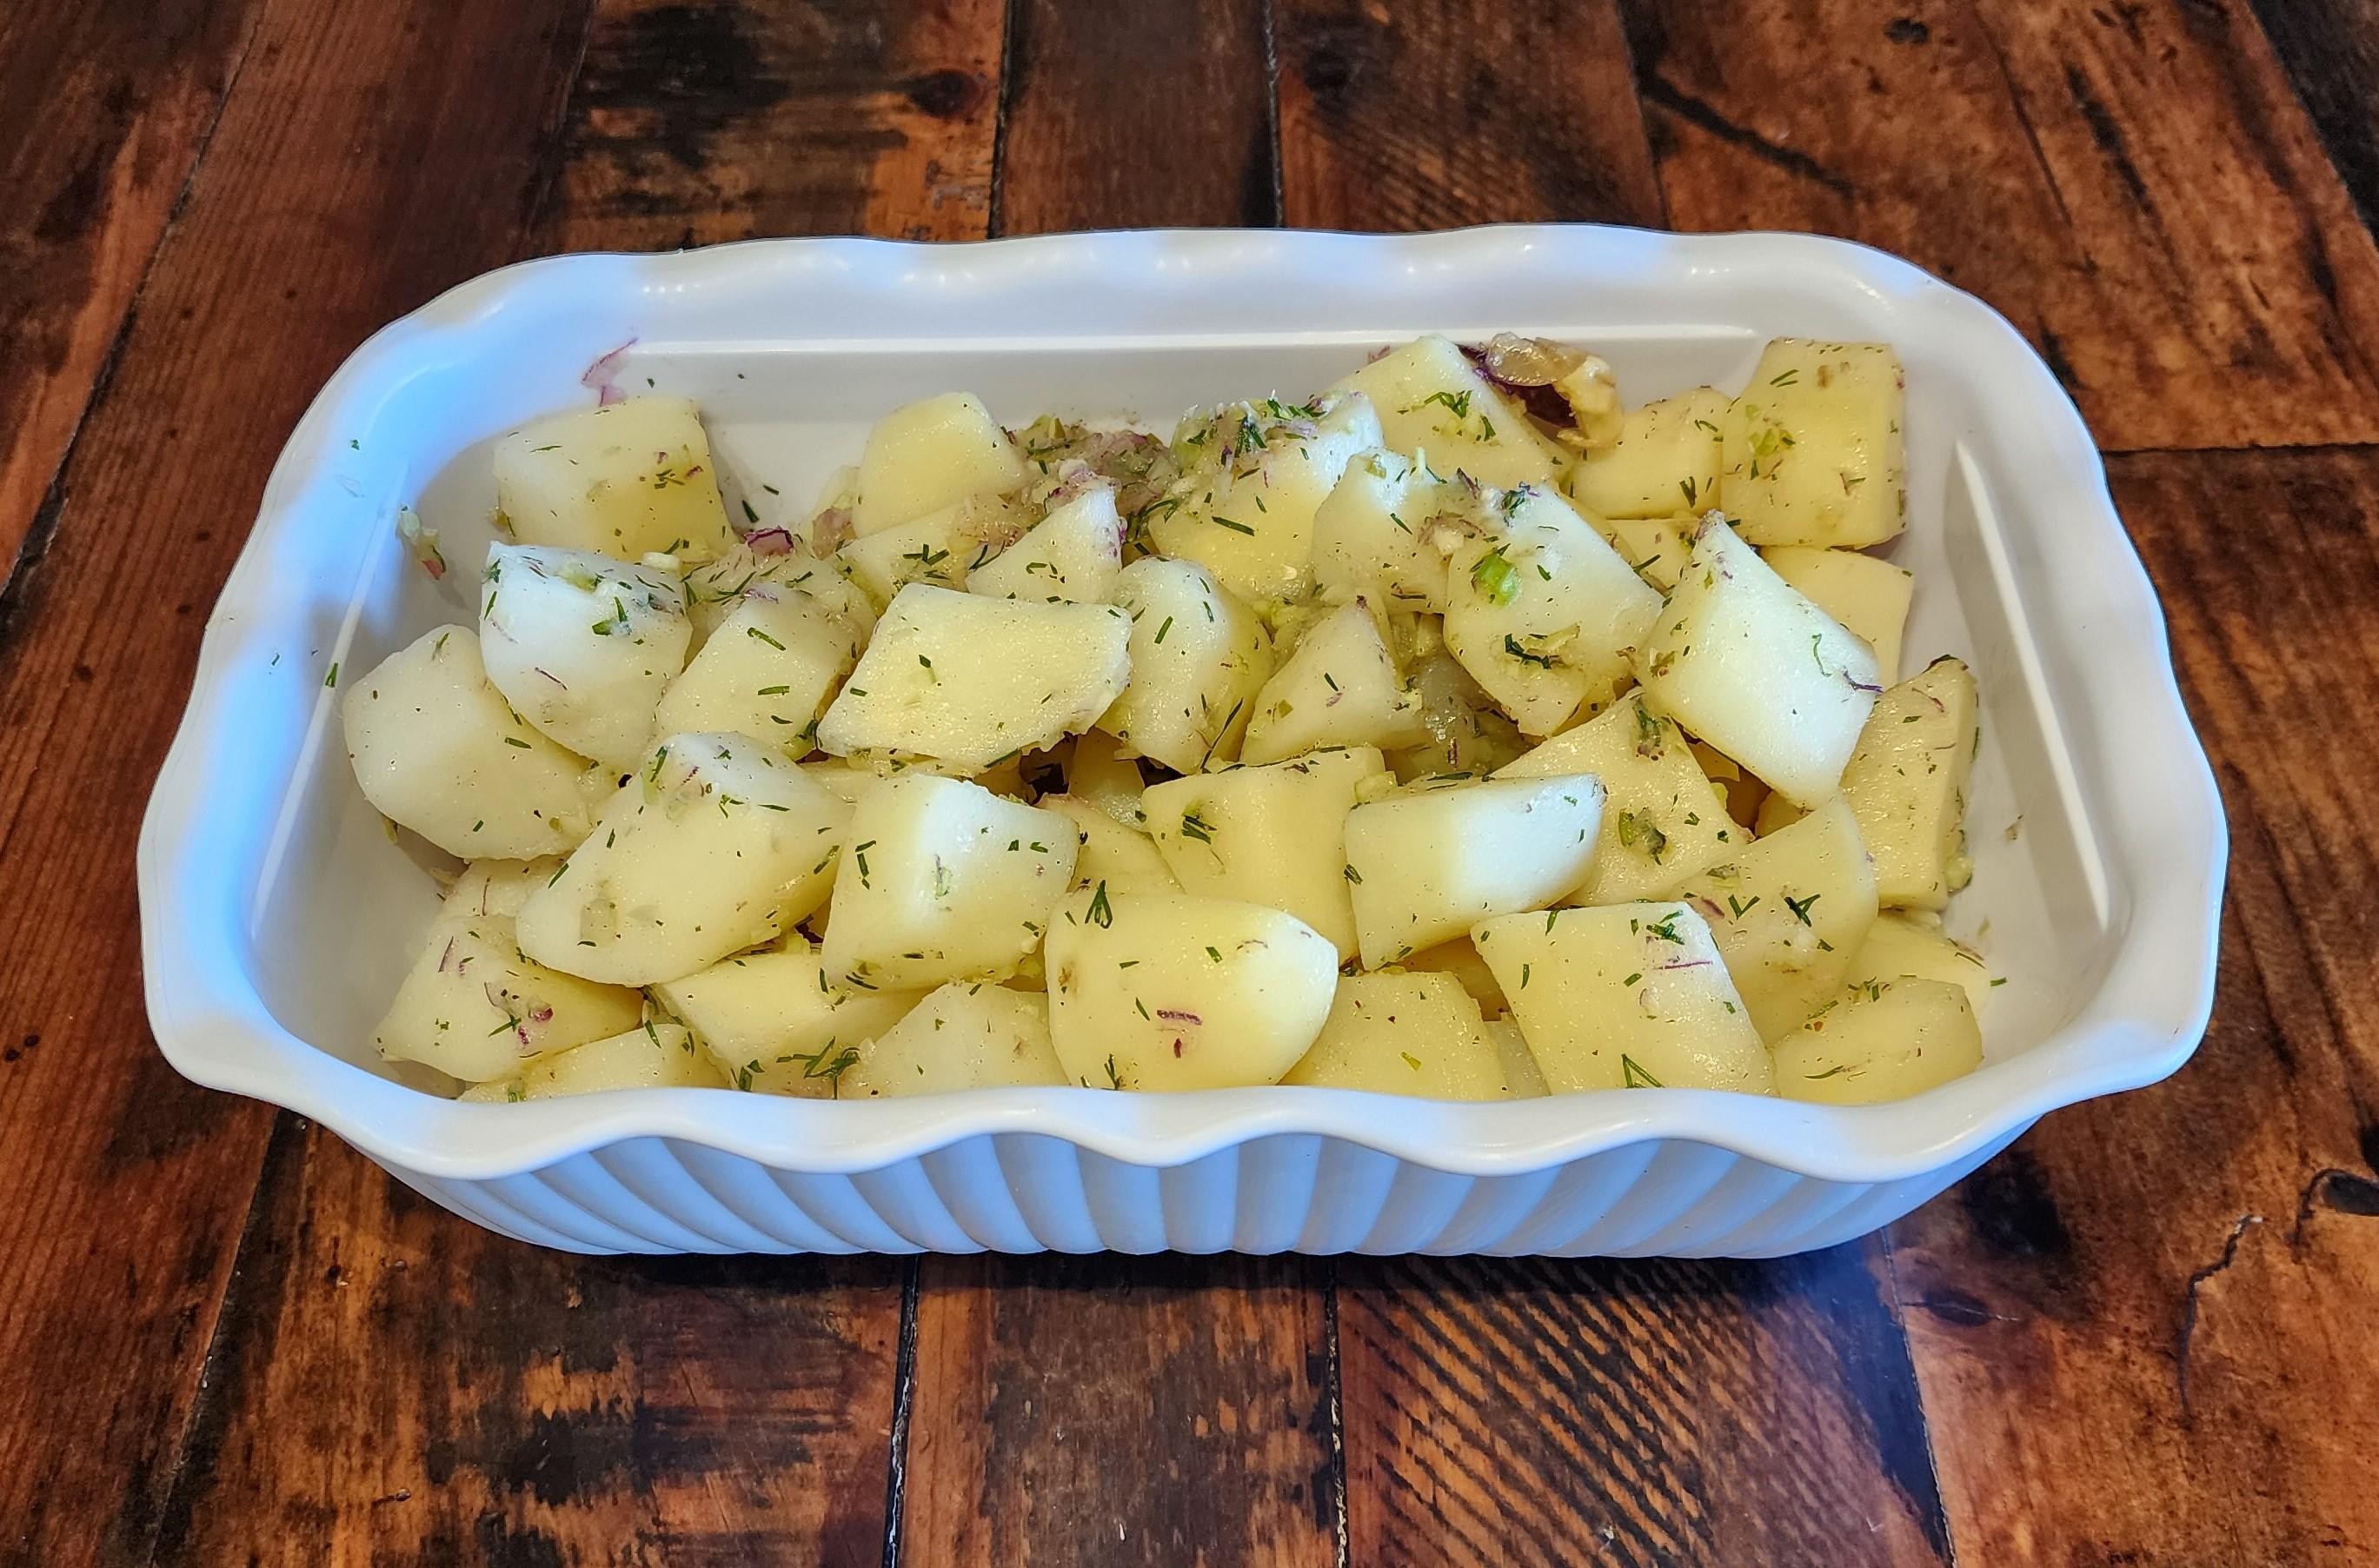 Potato - Small